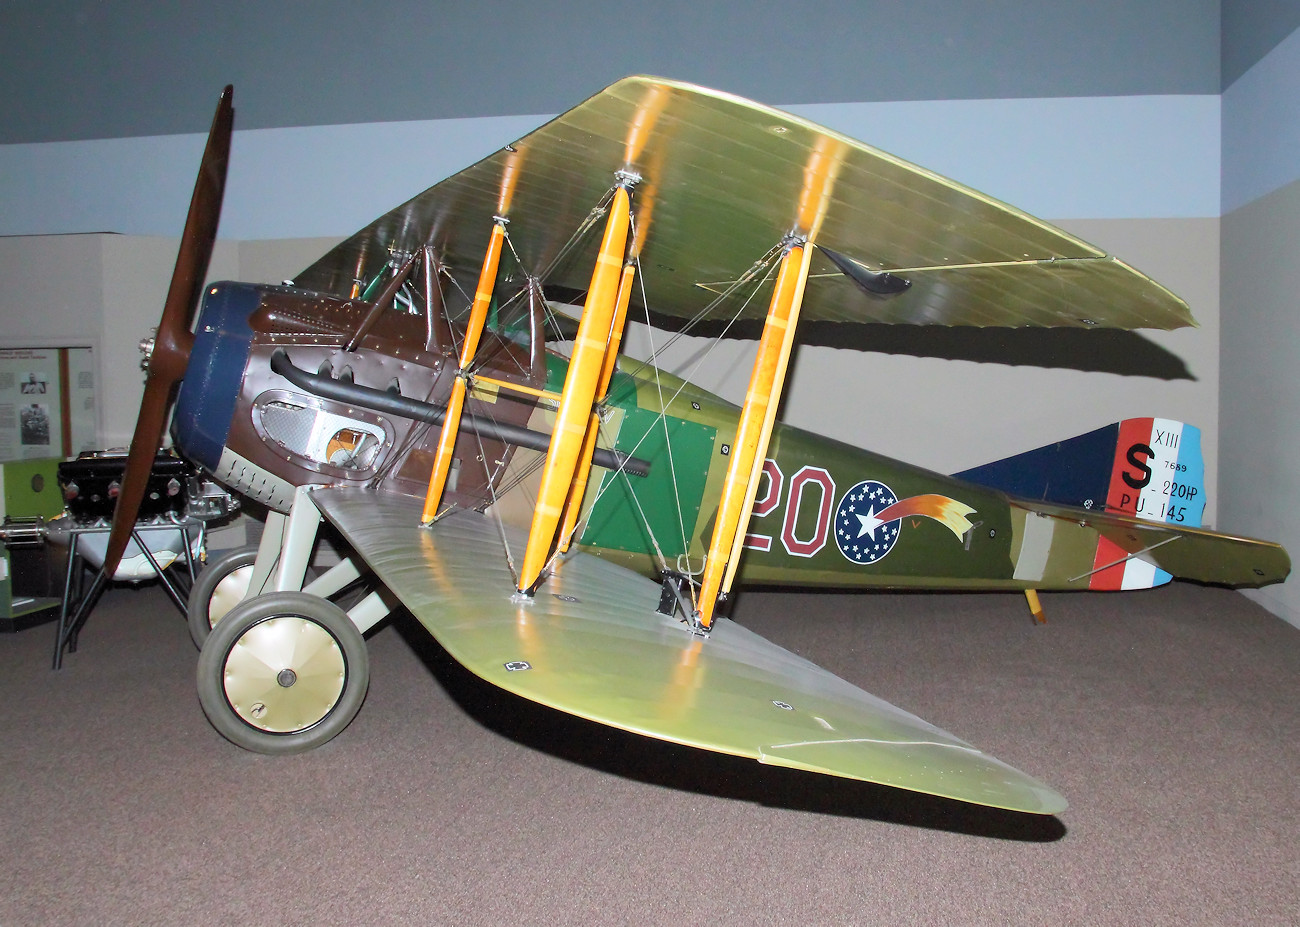 SPAD XIII Smith IV - Eines der besten Jagdflugzeuge aus Frankreich im Ersten Weltkrieg